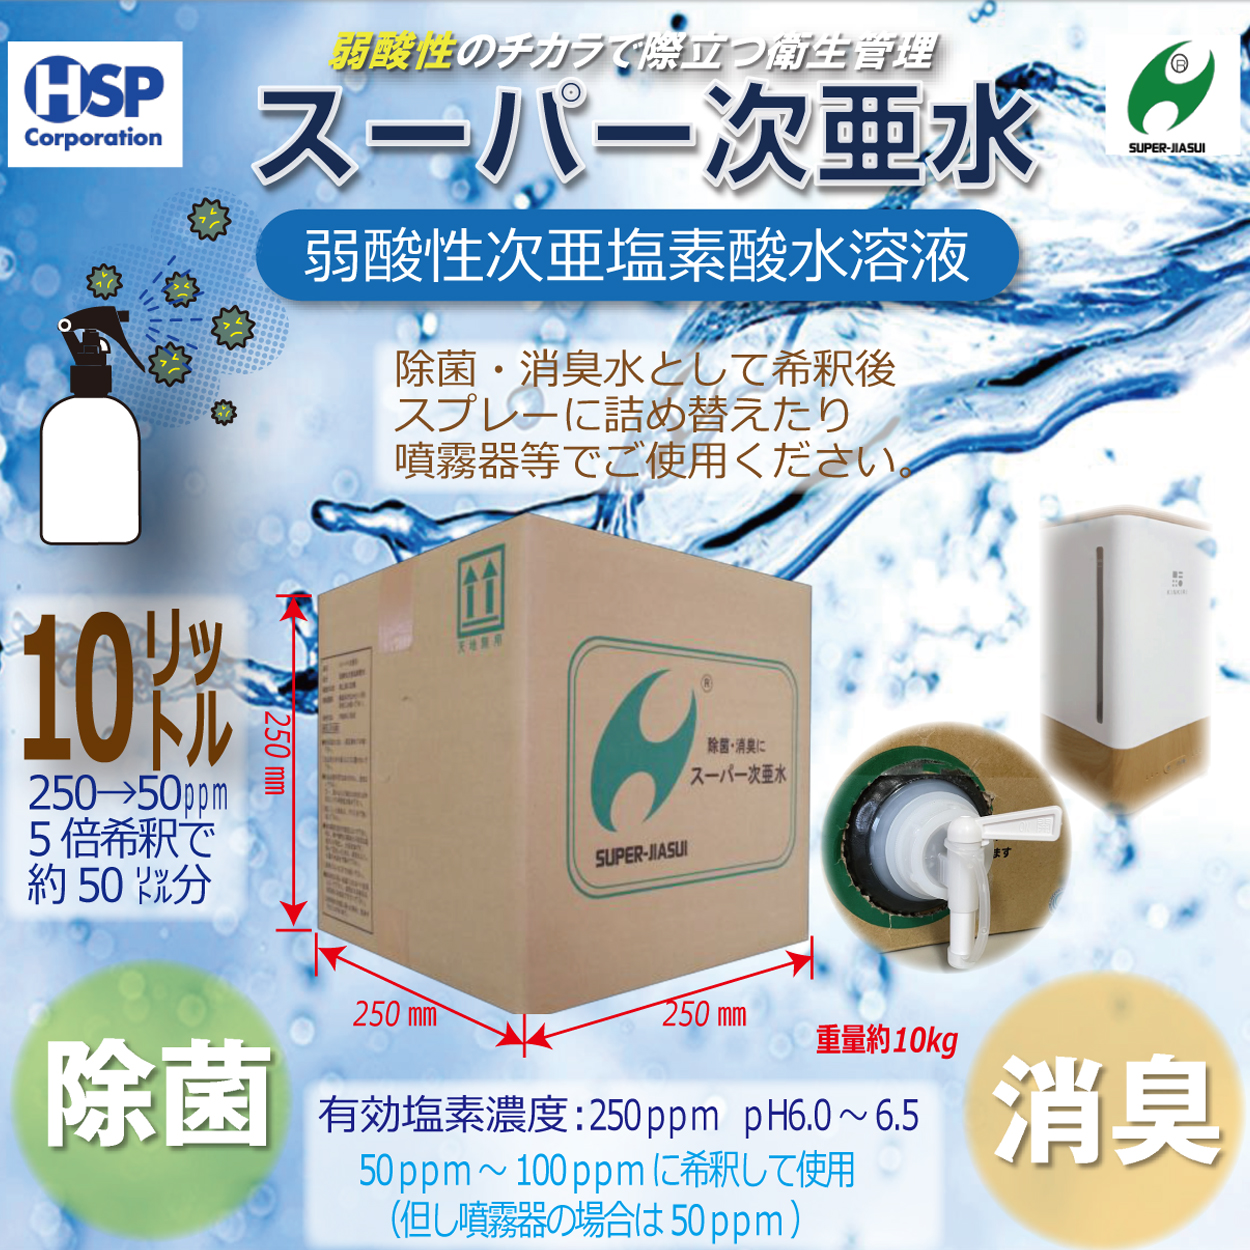 【送料無料】スーパー次亜水 10.0L 次亜塩素酸水溶液 除菌 消臭 250ppm 弱酸性6.0~6.5pH 安全 日本製